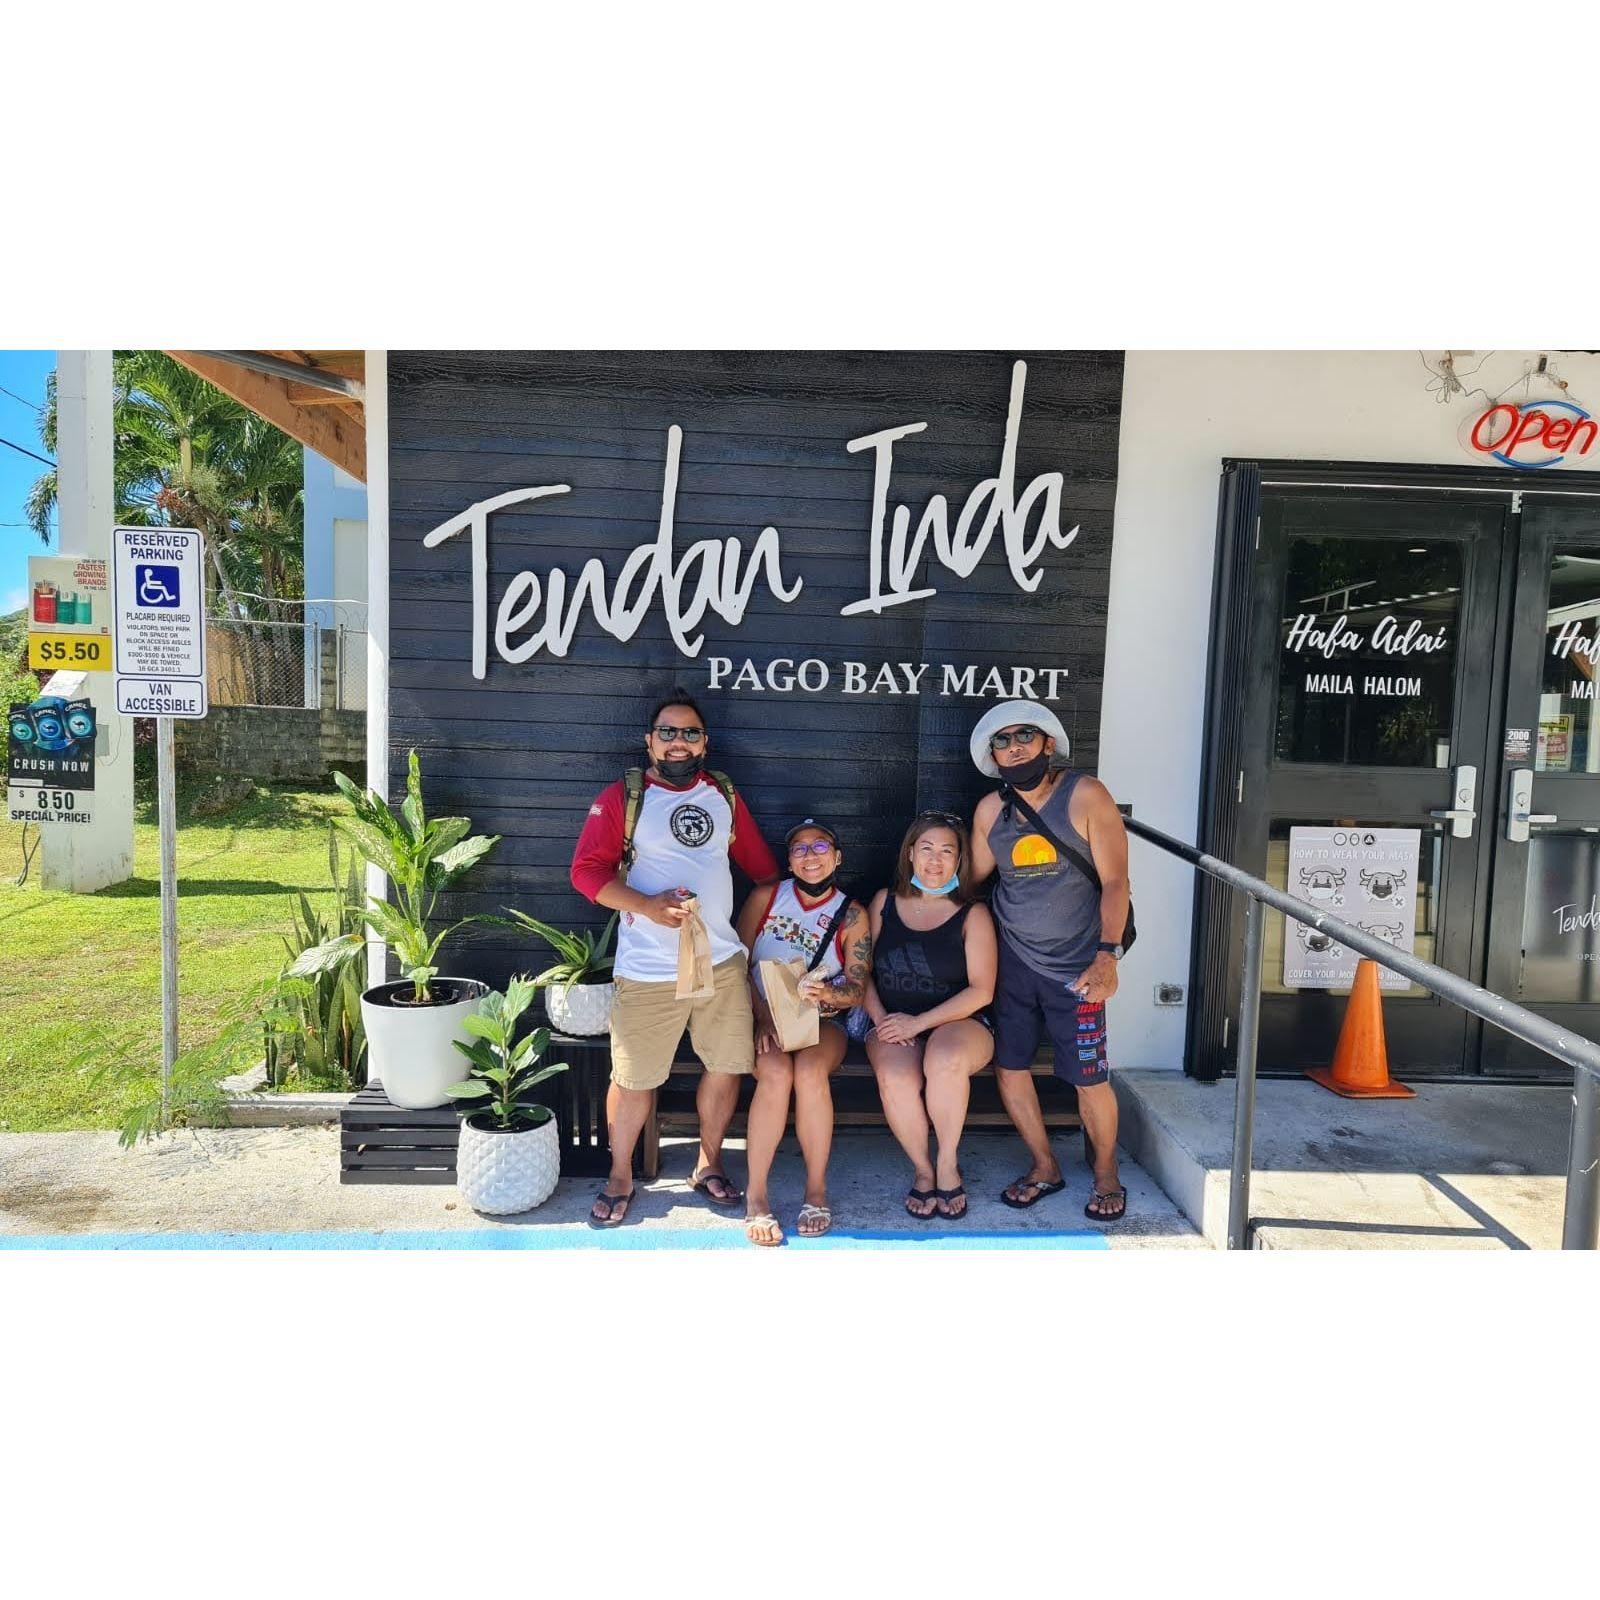 Guam 2021 - with Michaela's parents